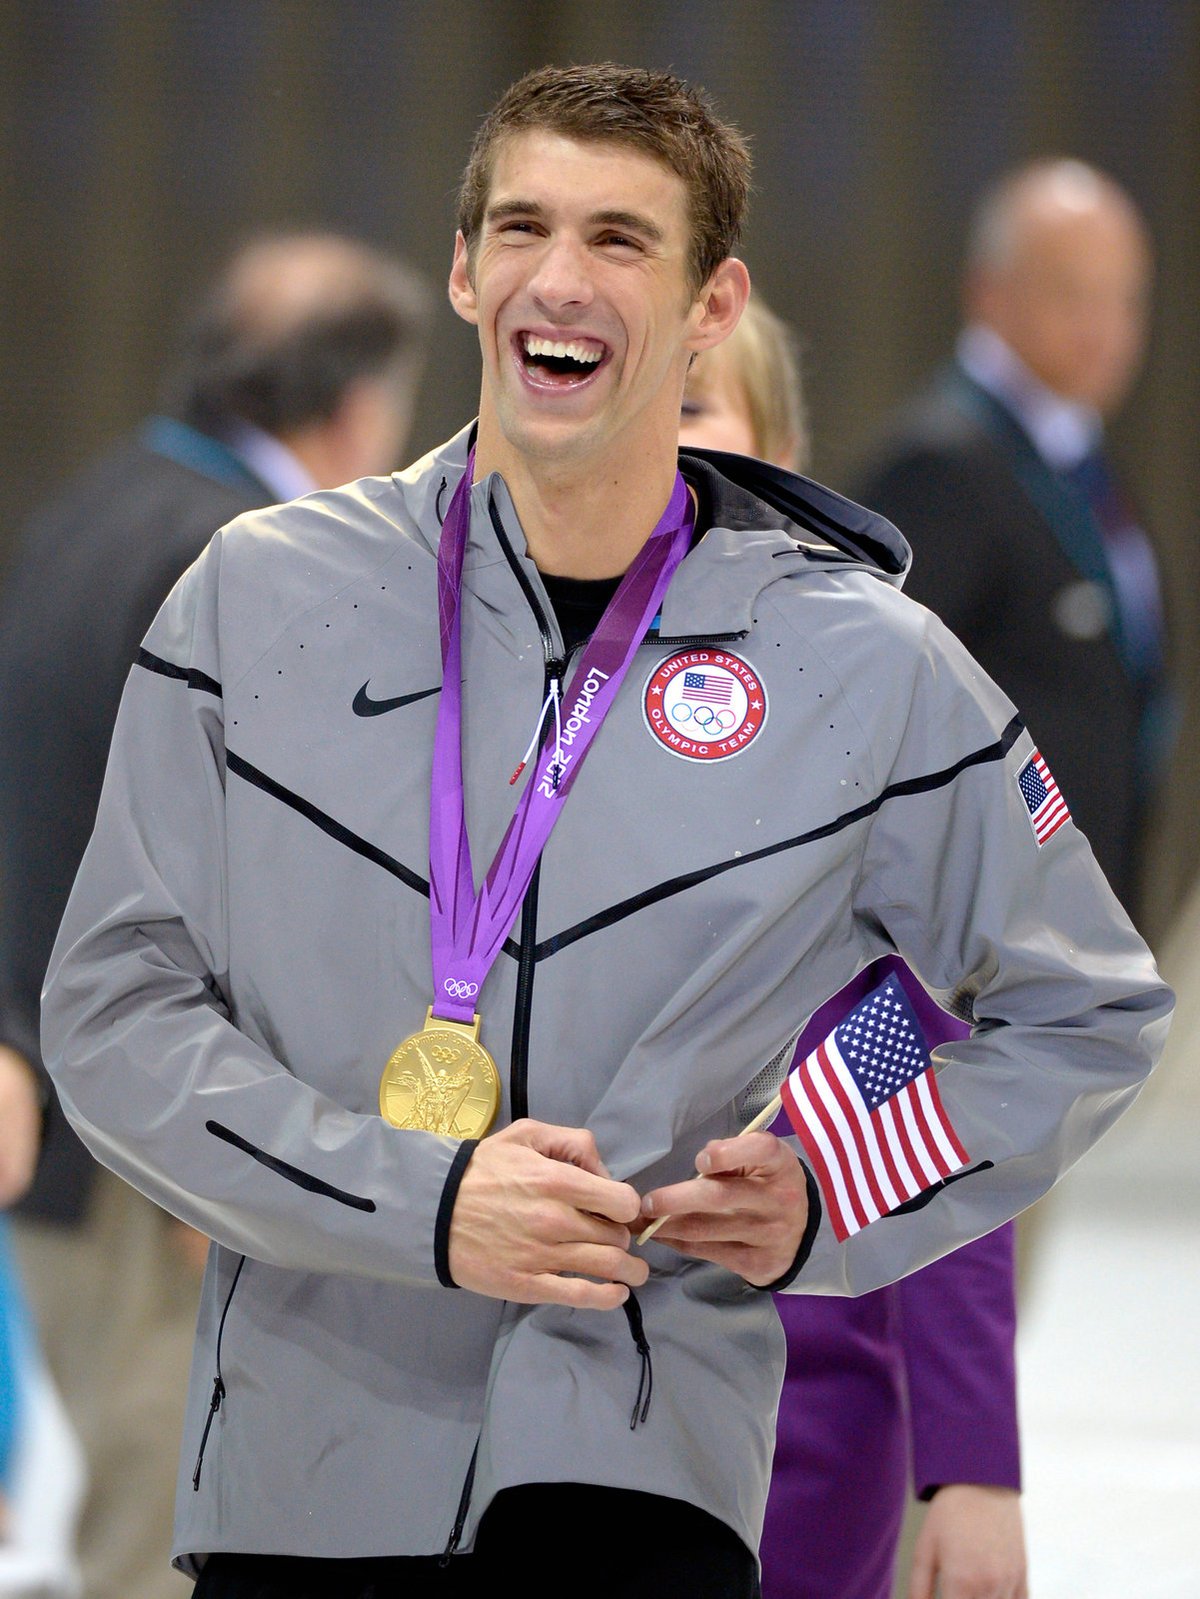 Američan Michael Phelps v sedmadvaceti letech skončil s kariérou - na vrcholu, coby nejúspěšnější plavec v historii